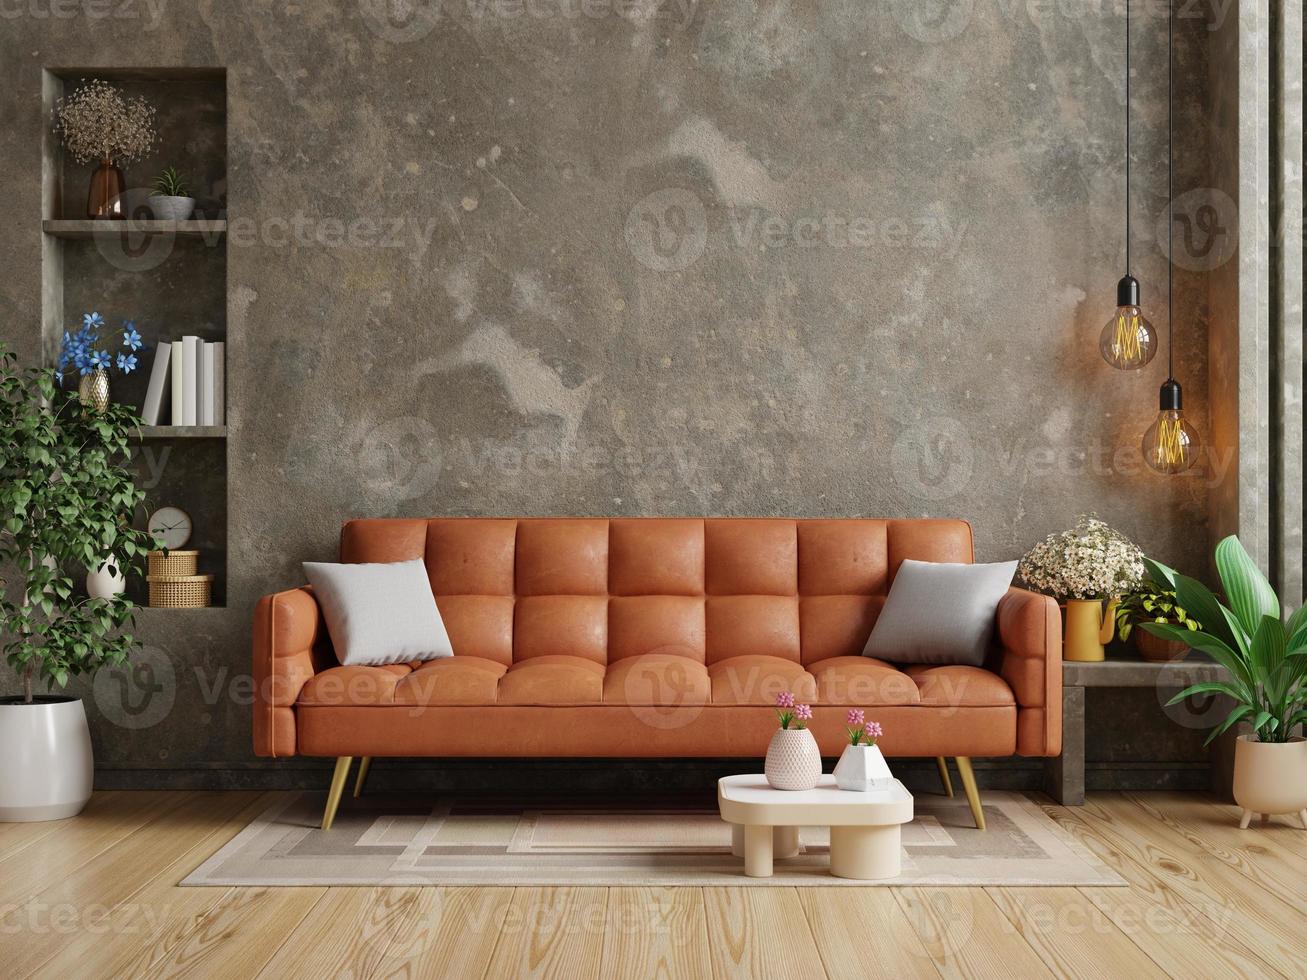 leven kamer in zolder hebben oranje leer sofa en decoratie minimaal Aan beton muur. 3d illustratie renderen foto